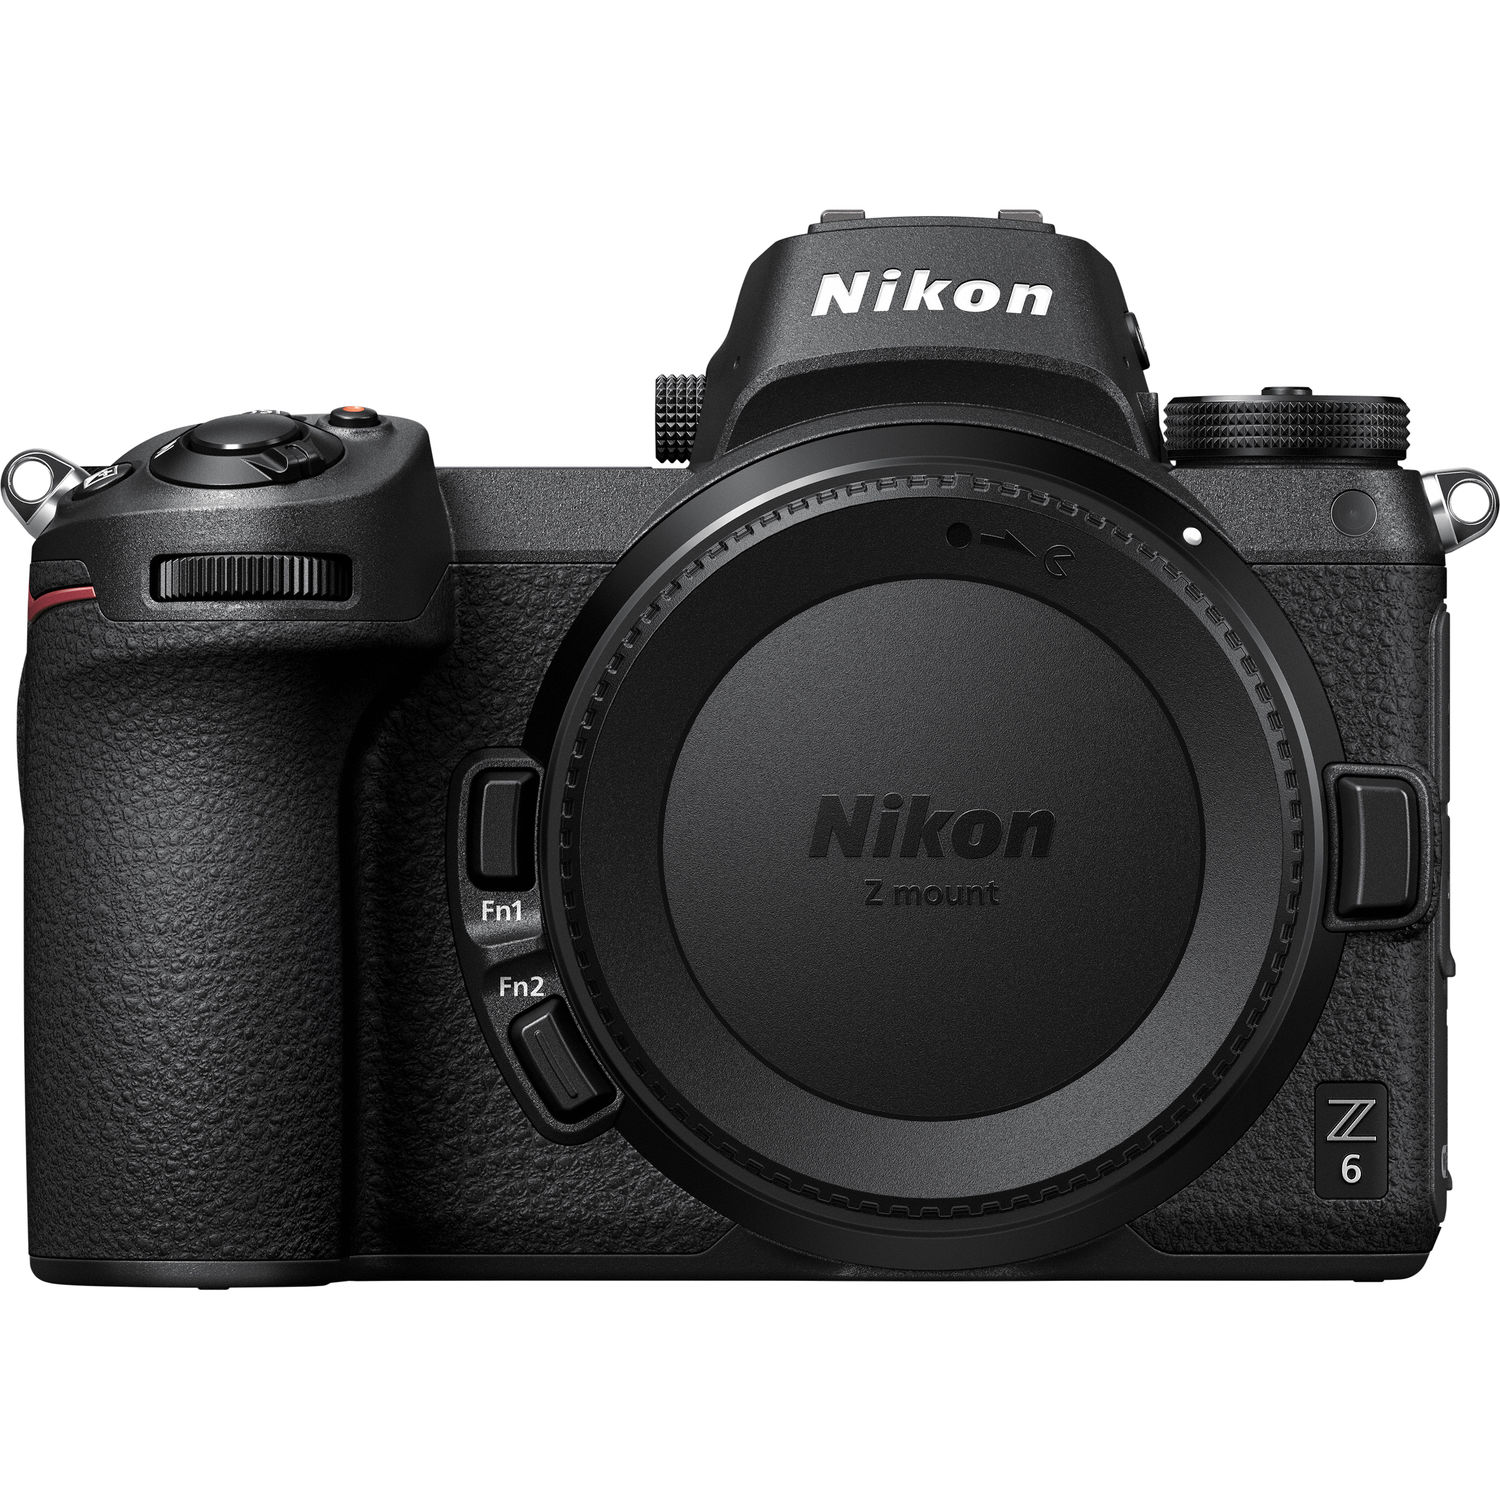 Nikon Z6 24.5 Megapixel Mirrorless Camera Body Only, Black - image 2 of 5